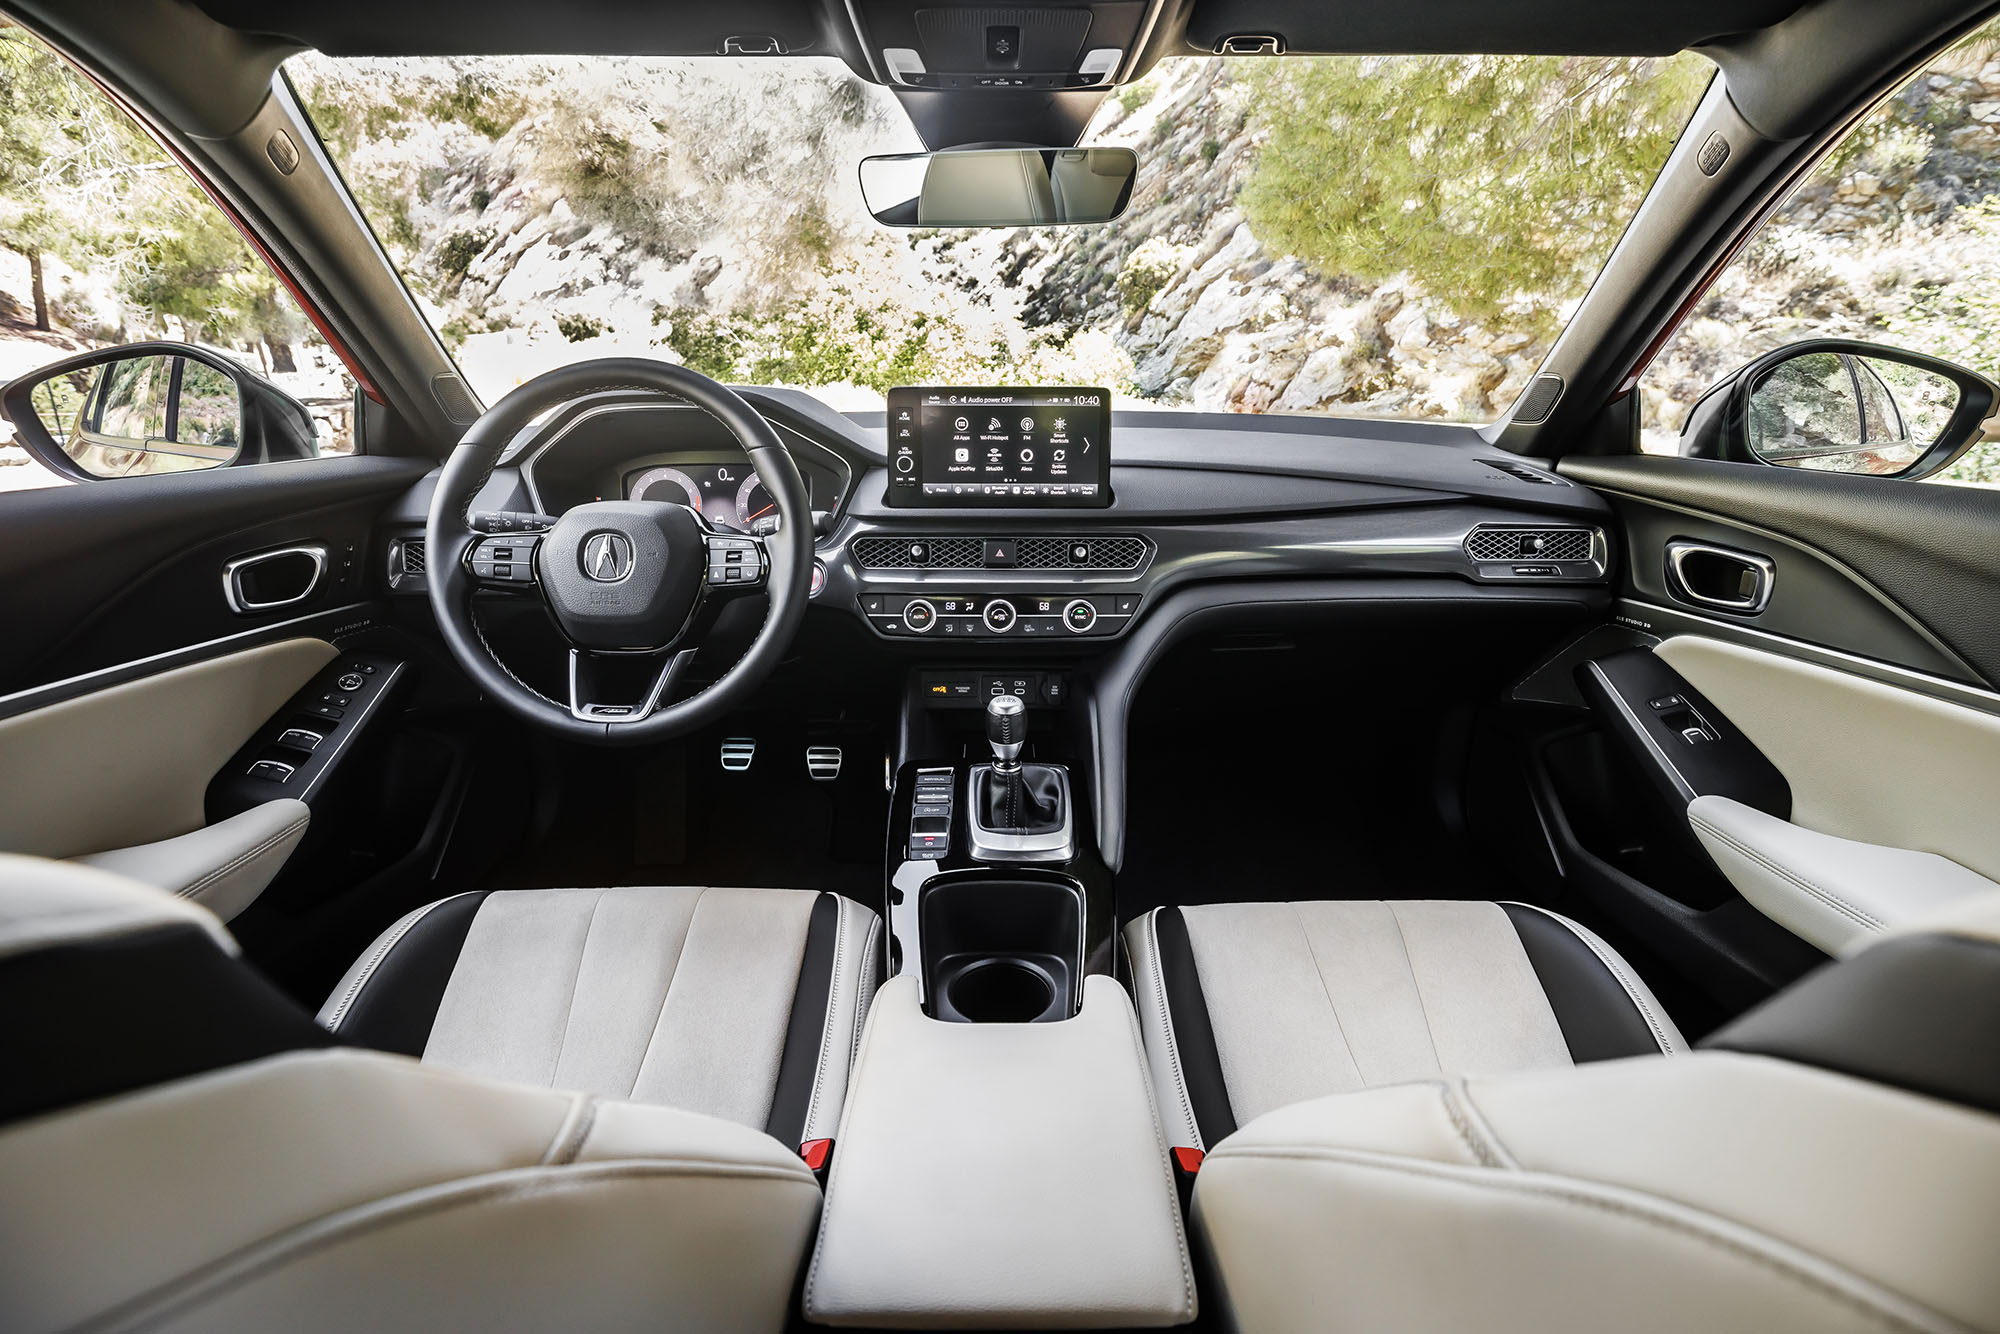 2023 Acura Integra A-Spec interior in cream white